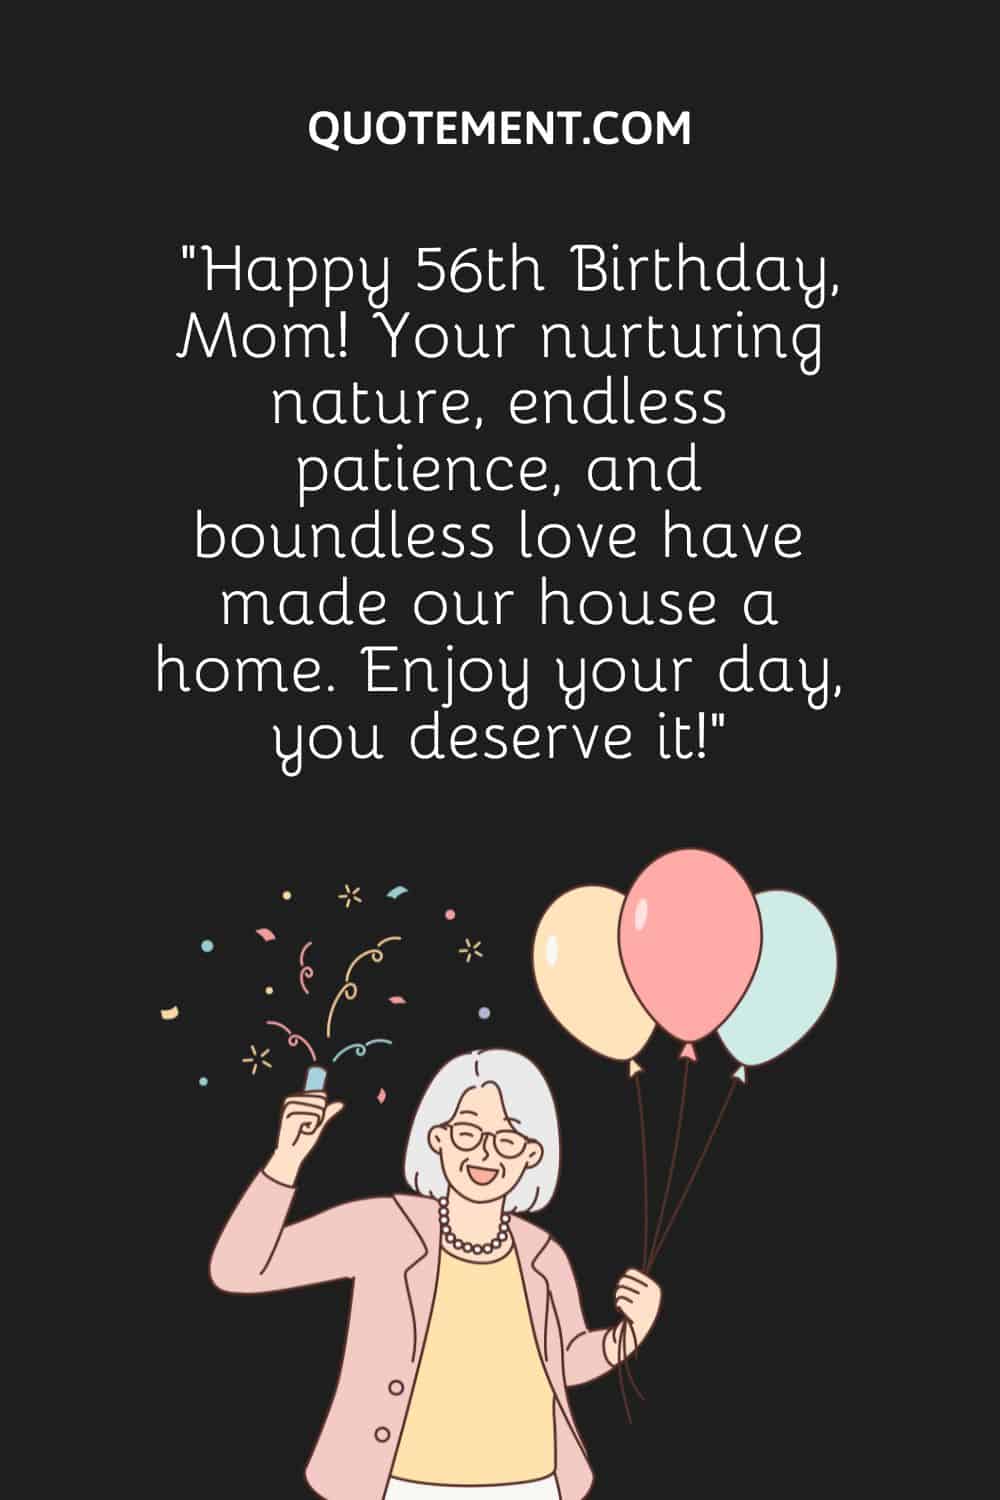 una mujer mayor que lleva globos de cumpleaños en una mano y confeti en otra